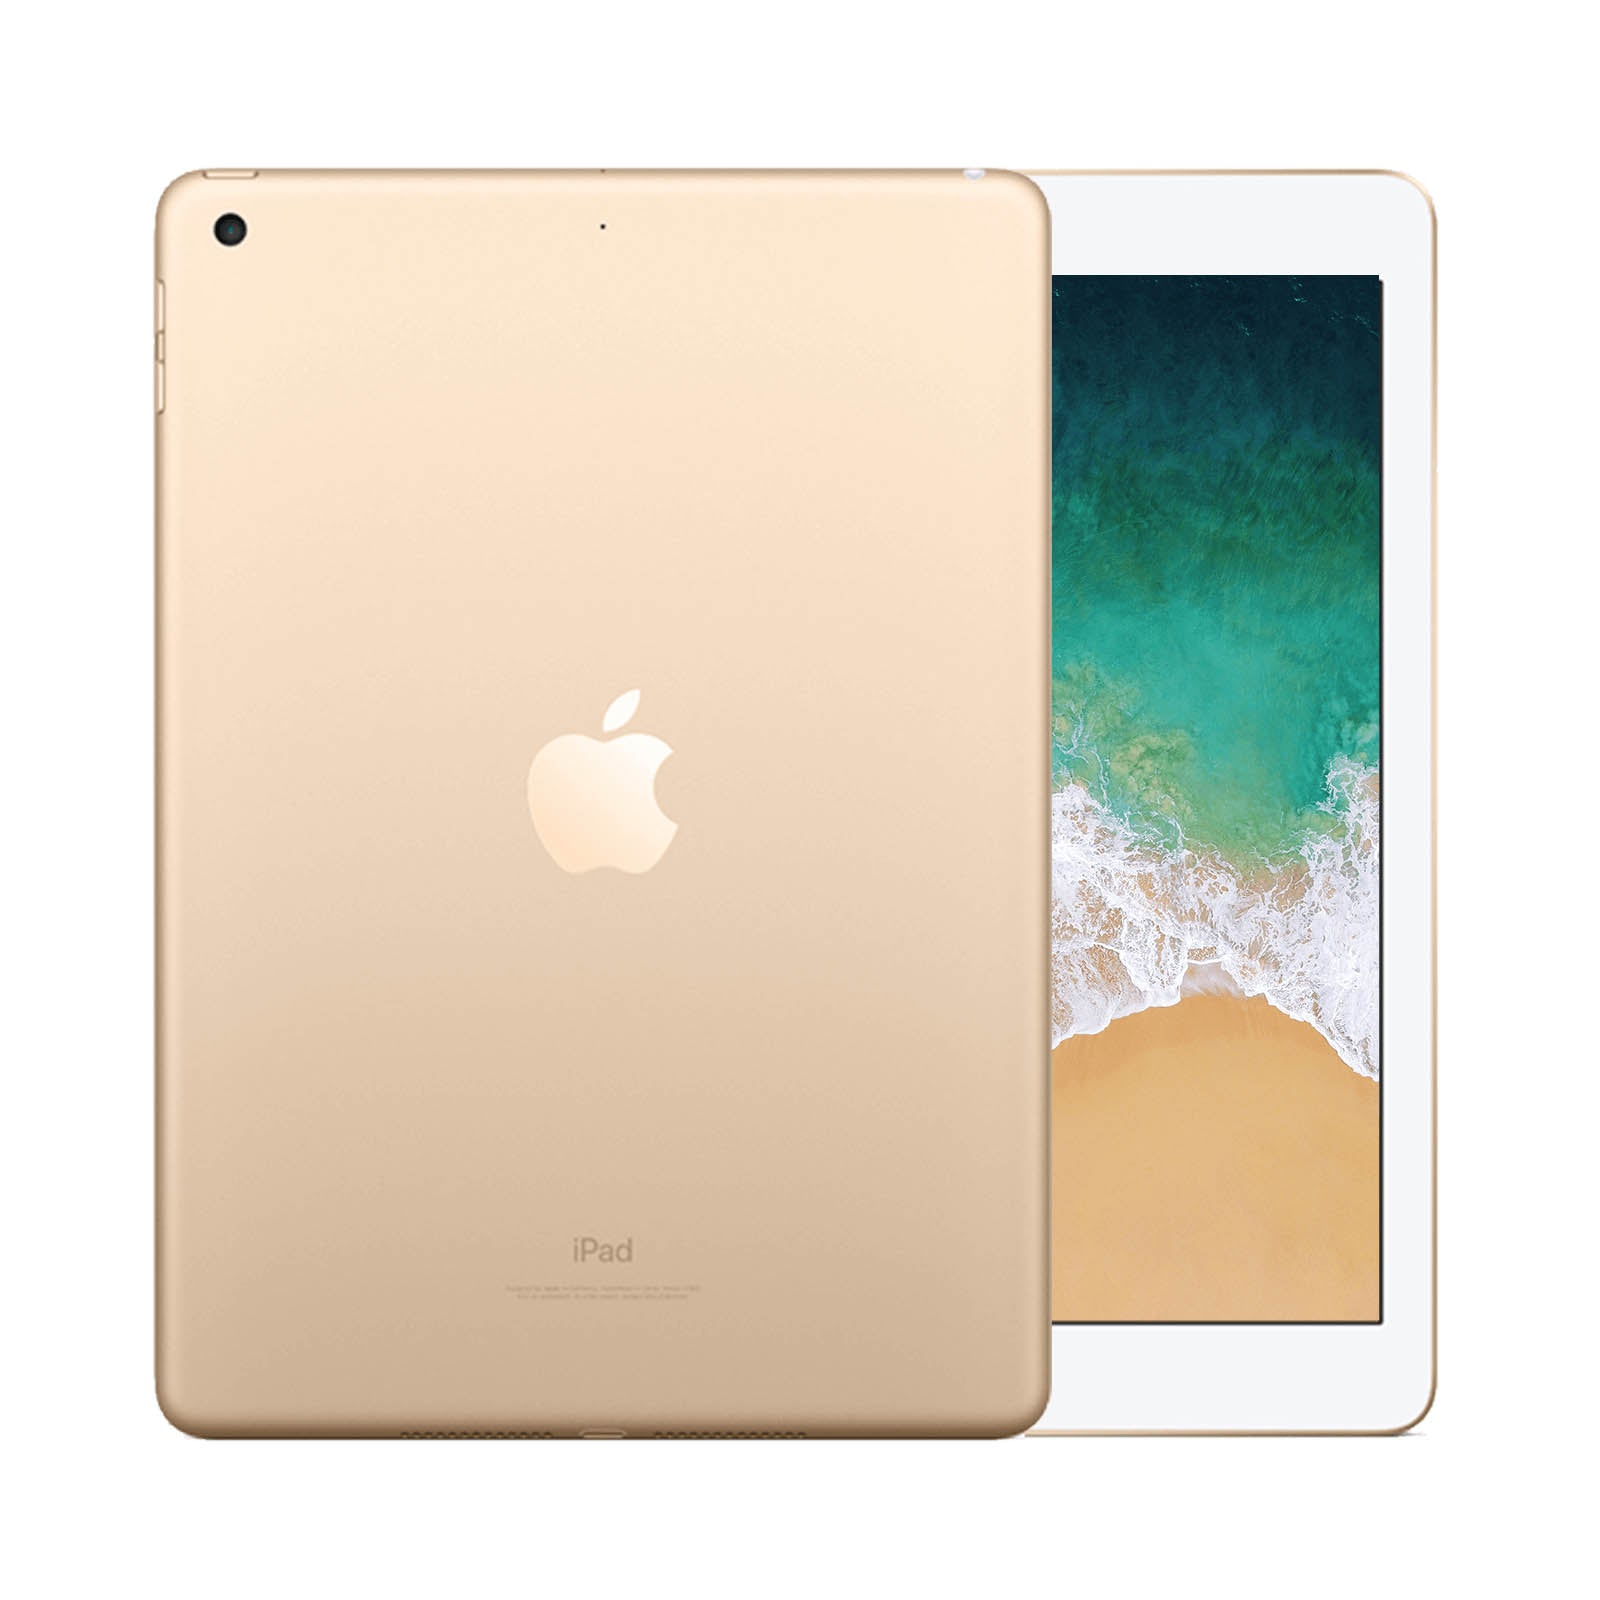 Apple iPad 5 32GB WiFi Gold - Good 32GB Gold Good